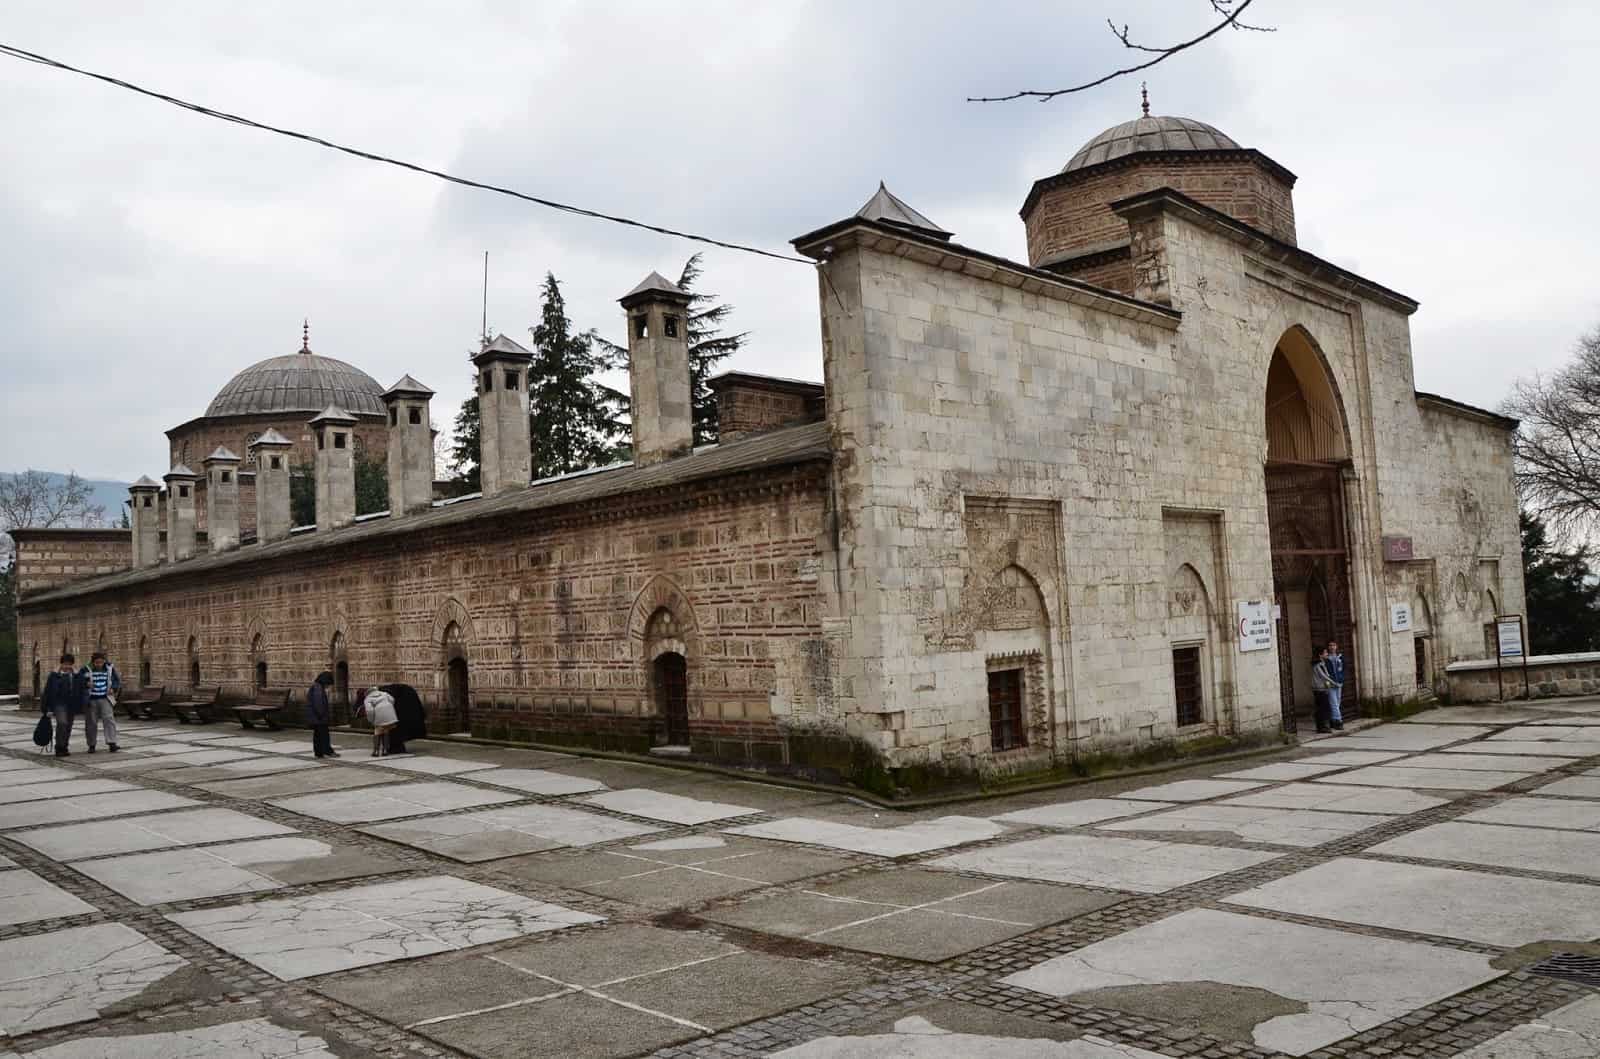 Yıldırım Bayezid Medresesi in Bursa, Turkey